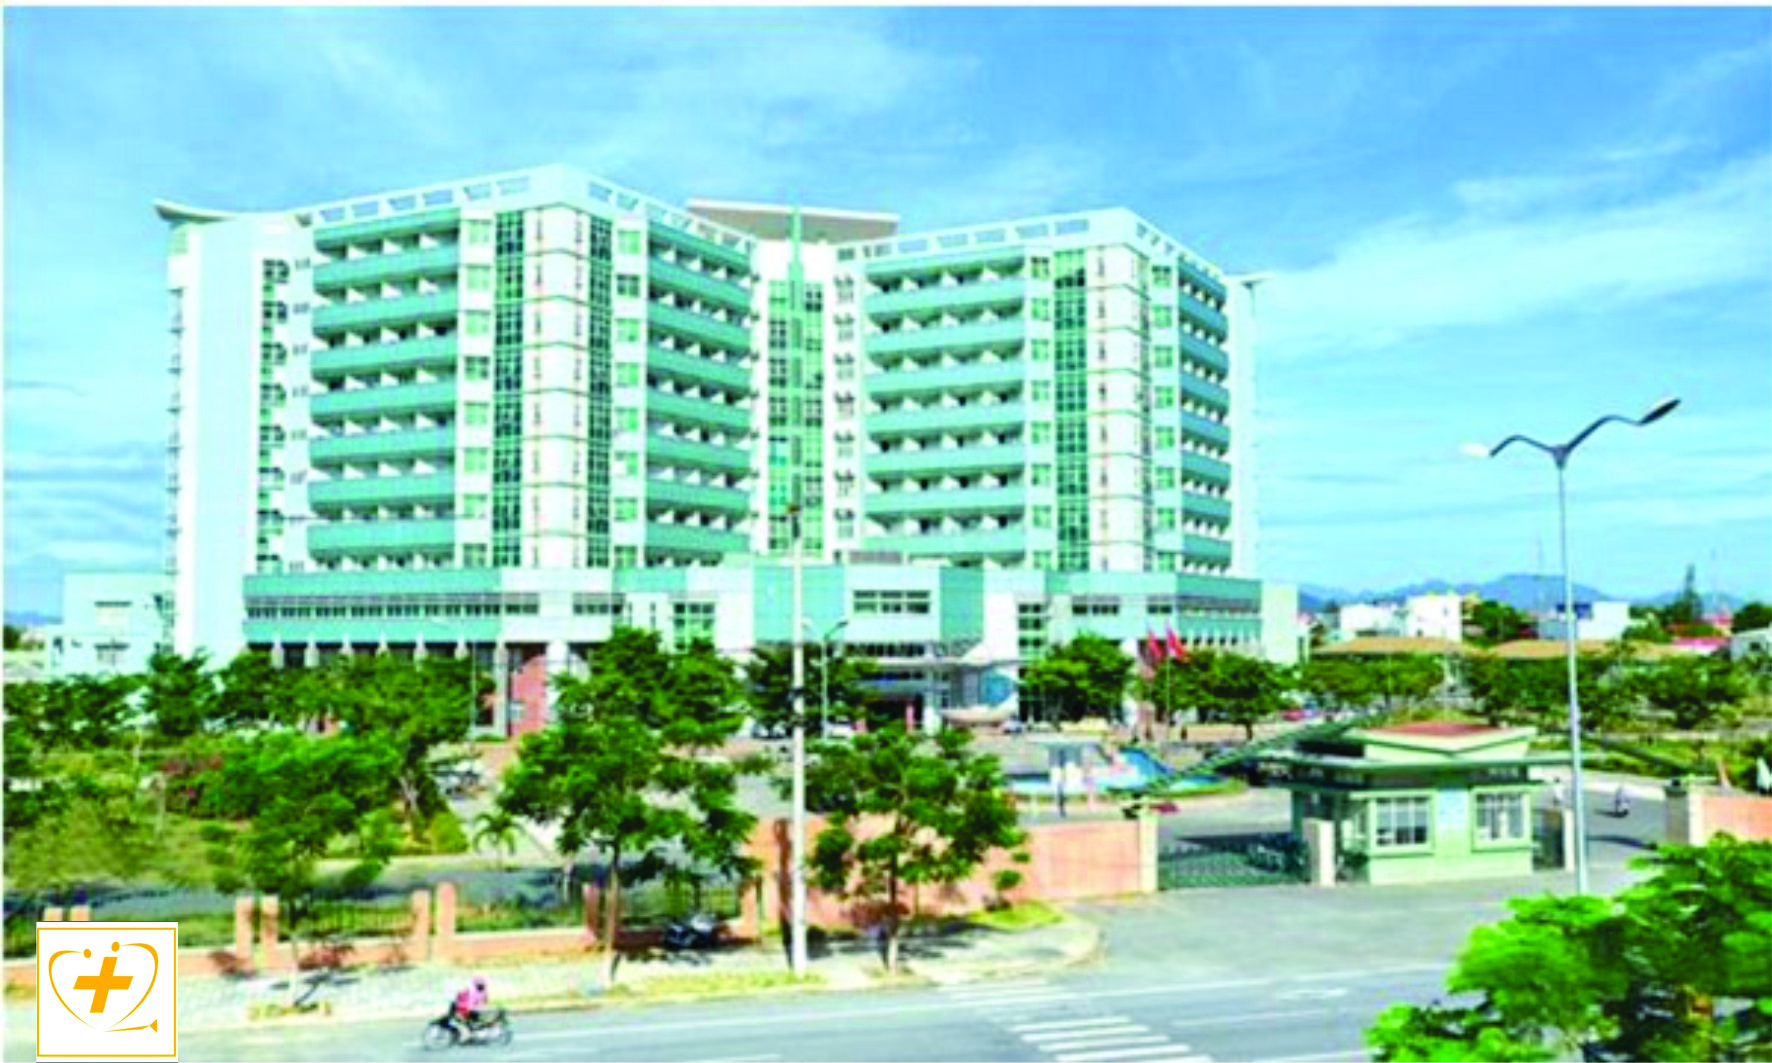 Khoa phục hồi chức năng – Bệnh viện Phụ sản Nhi Đà Nẵng thông báo tuyển dụng